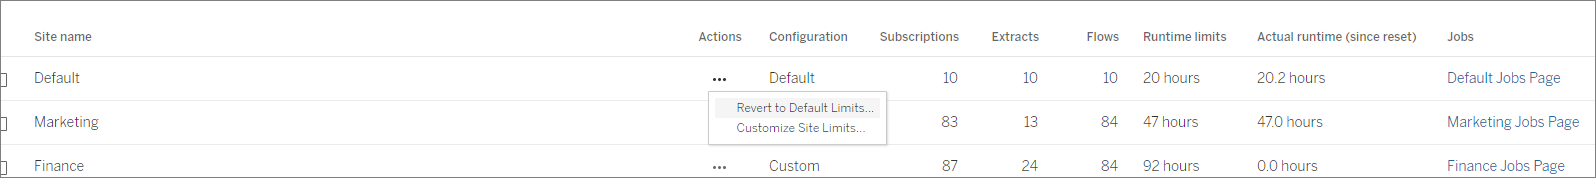 La imagen muestra una captura de pantalla de la lista de sitios en la pestaña de límites de recursos de la página de configuración donde puede establecer límites personalizados para un sitio.